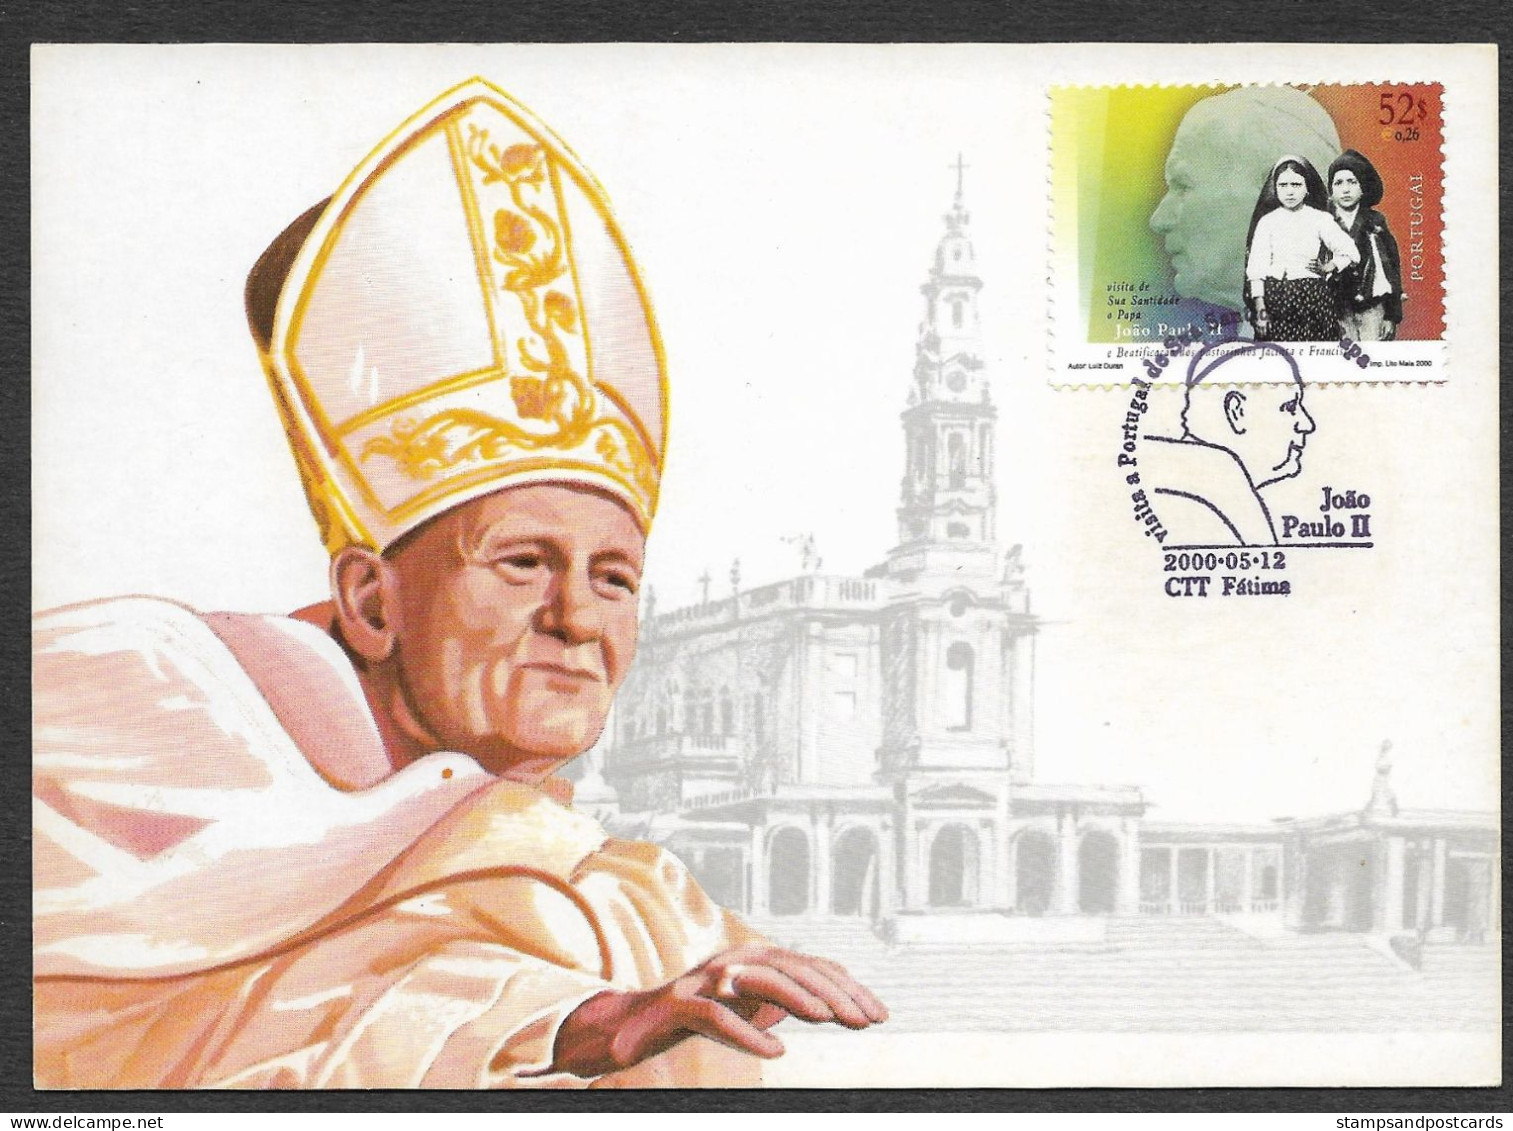 Portugal Pape Jean Paul II Notre Dame De Fatima Carte Maximum 2000 Pope Our Lady Of Fatima Maxicard - Päpste